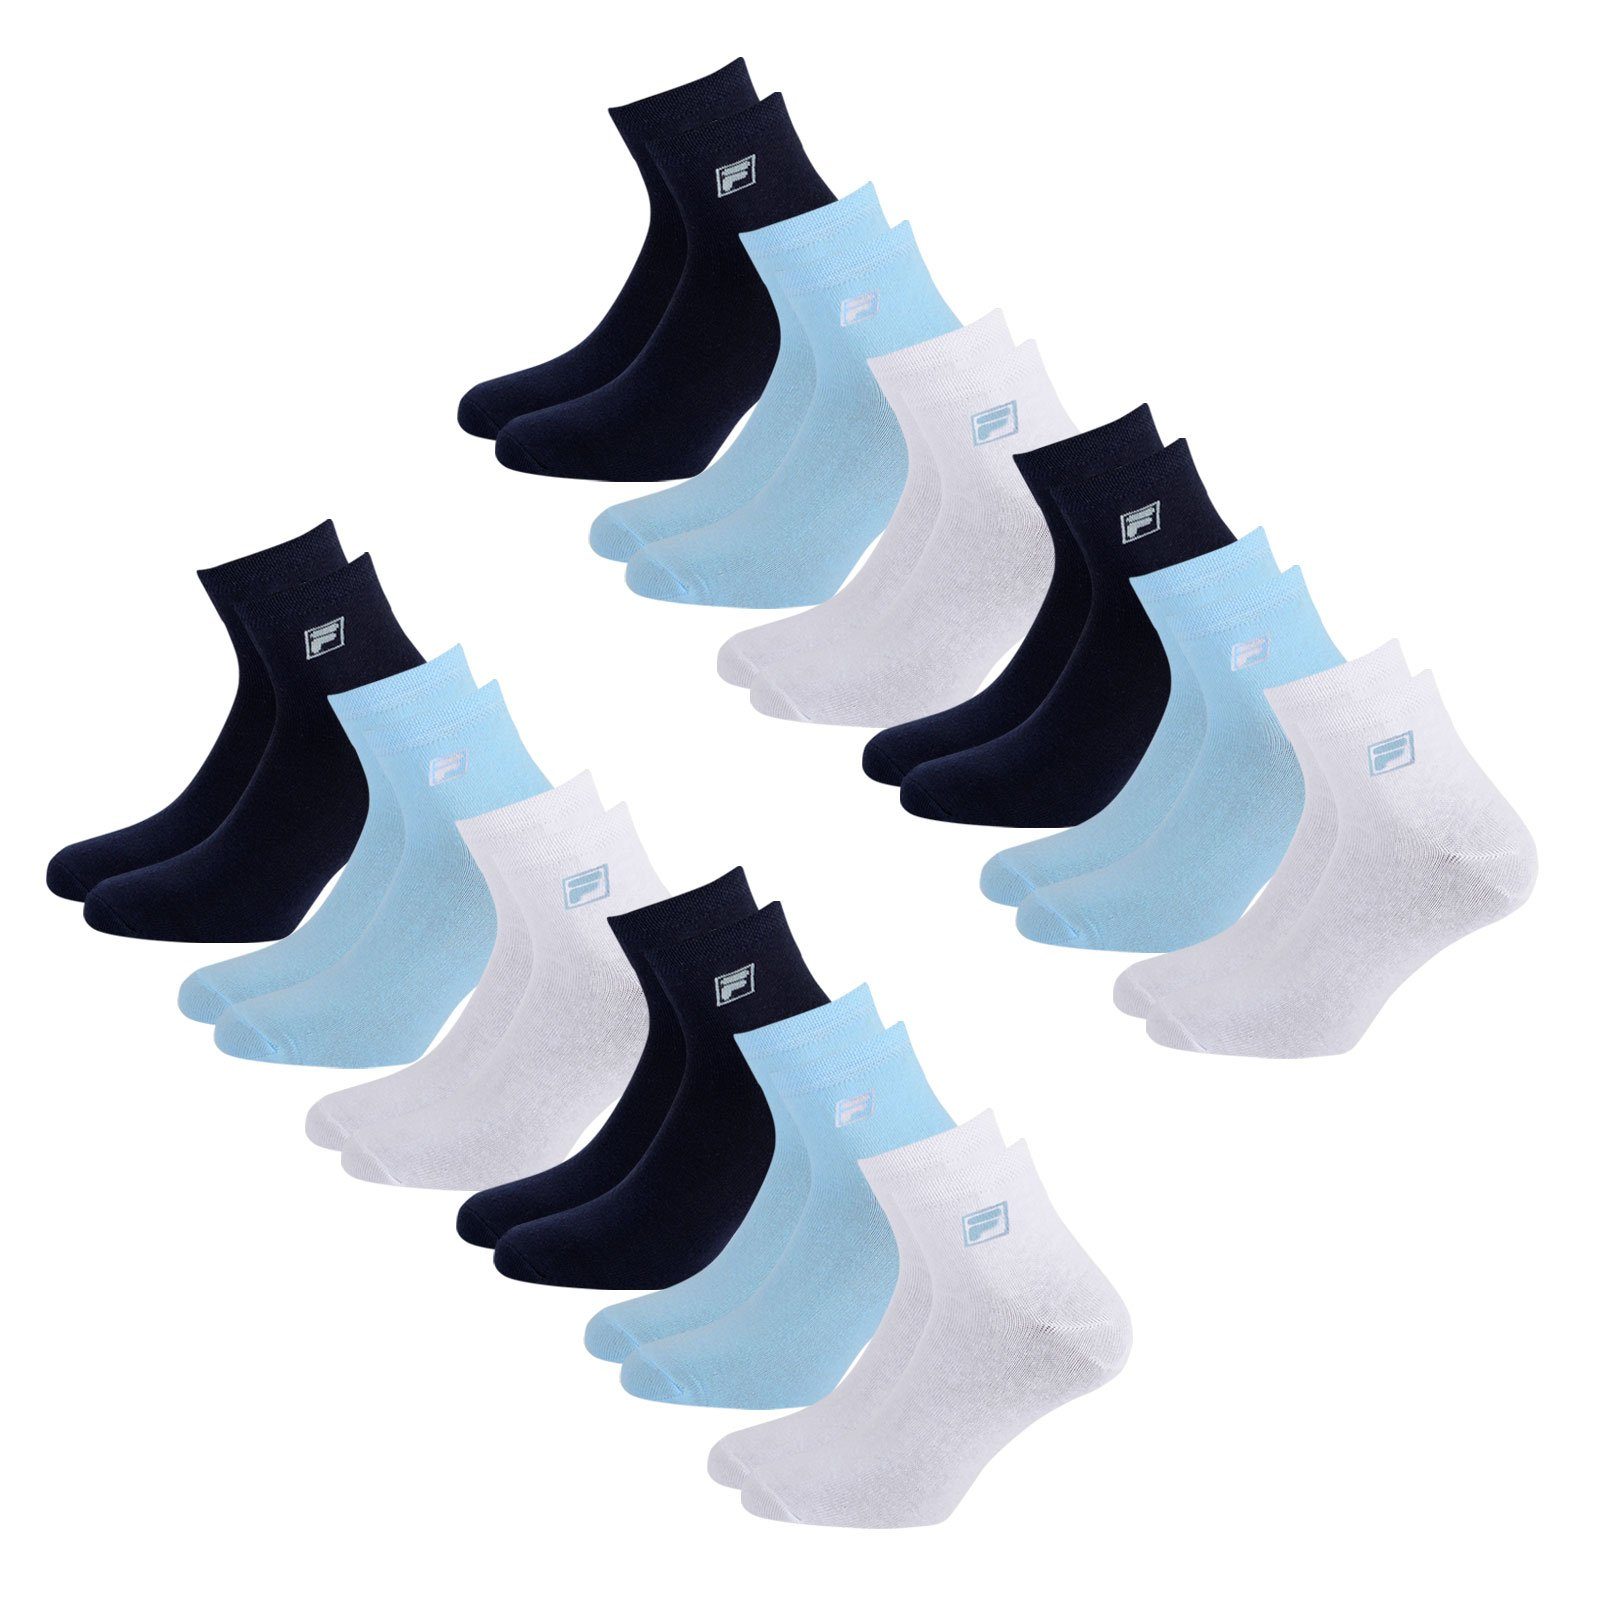 Fila Sportsocken white / Socken Piquebund mit (12-Paar) blue navy / 821 light elastischem Quarter